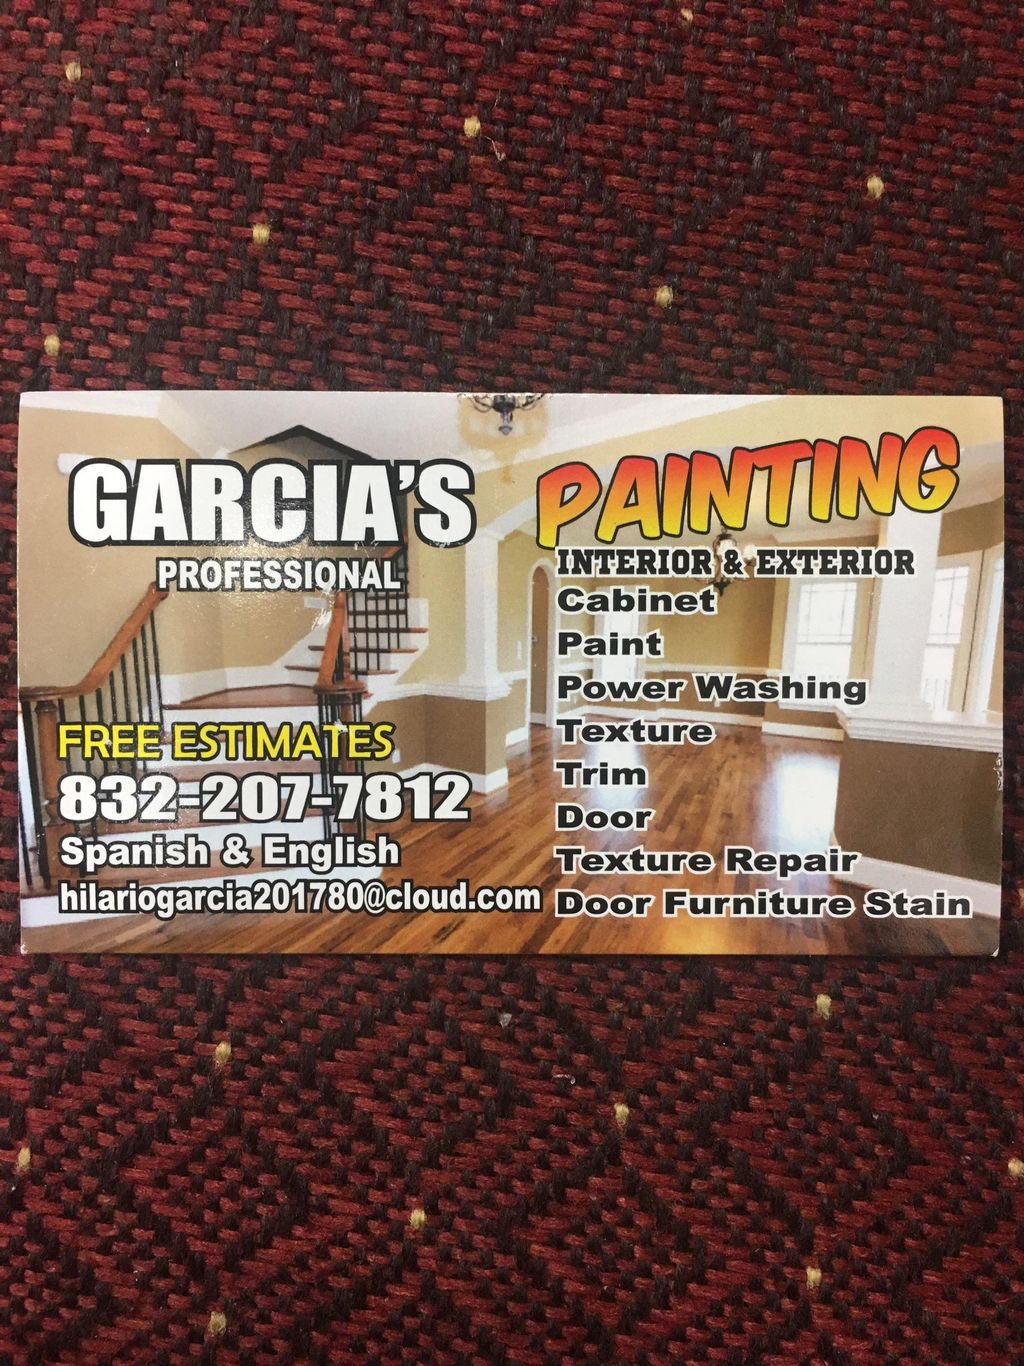 Gracias Professional Painting